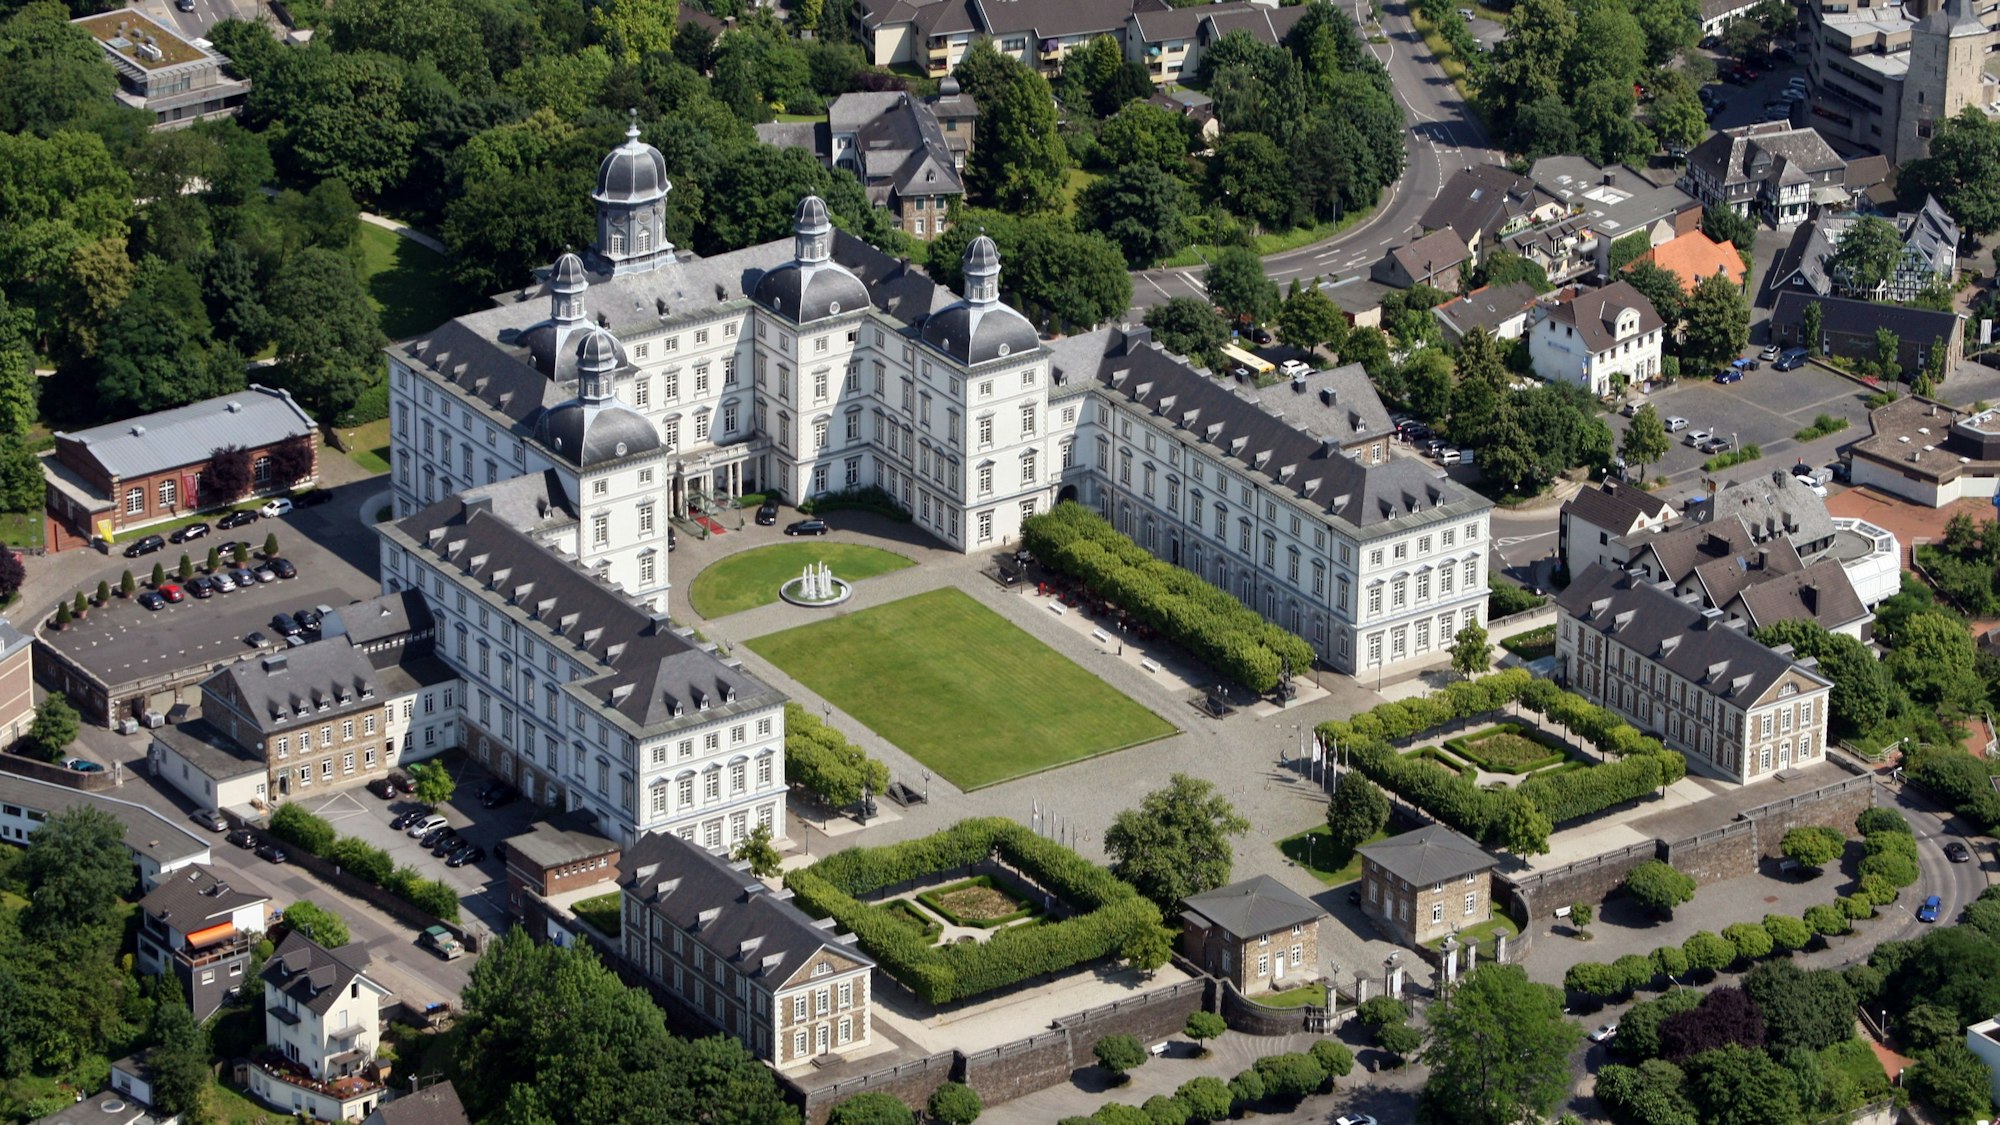 Luftaufnahme des Grandhotel Schloss Bensberg in Bergisch Gladbach